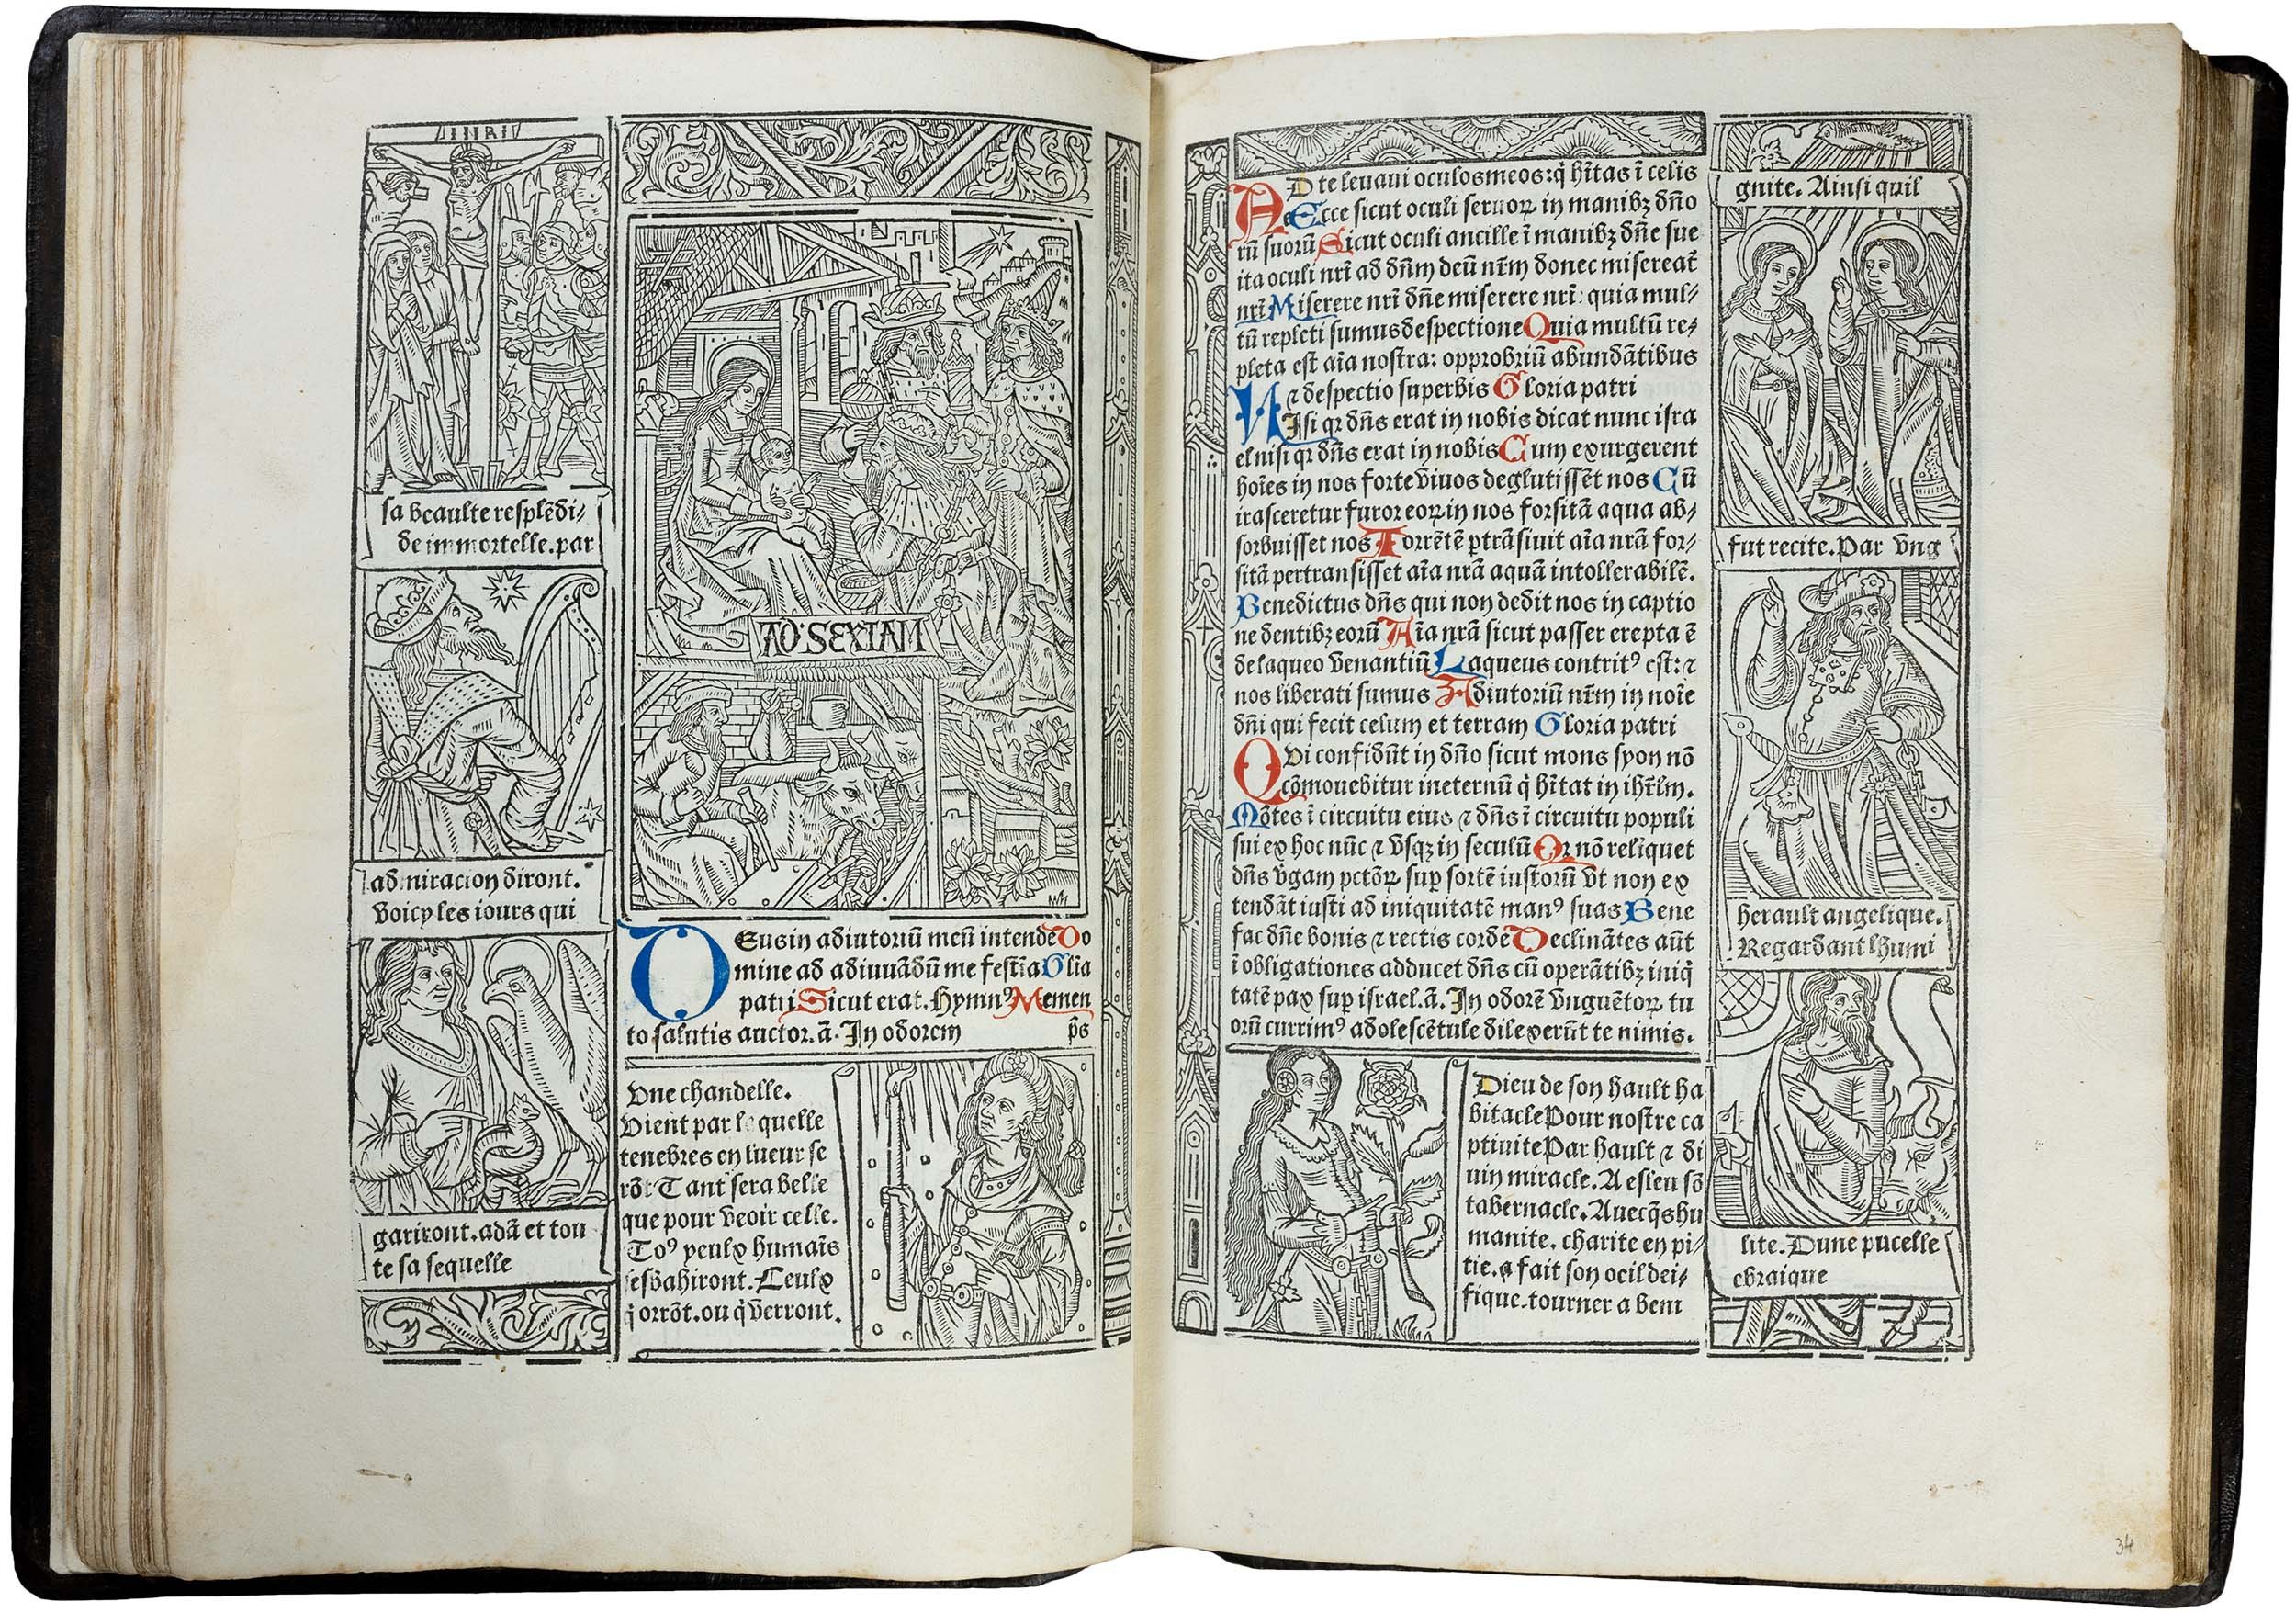 Grandes-heures-royales-verard-1488-1489-printed-book-of-hours-horae-bmv-36.jpg